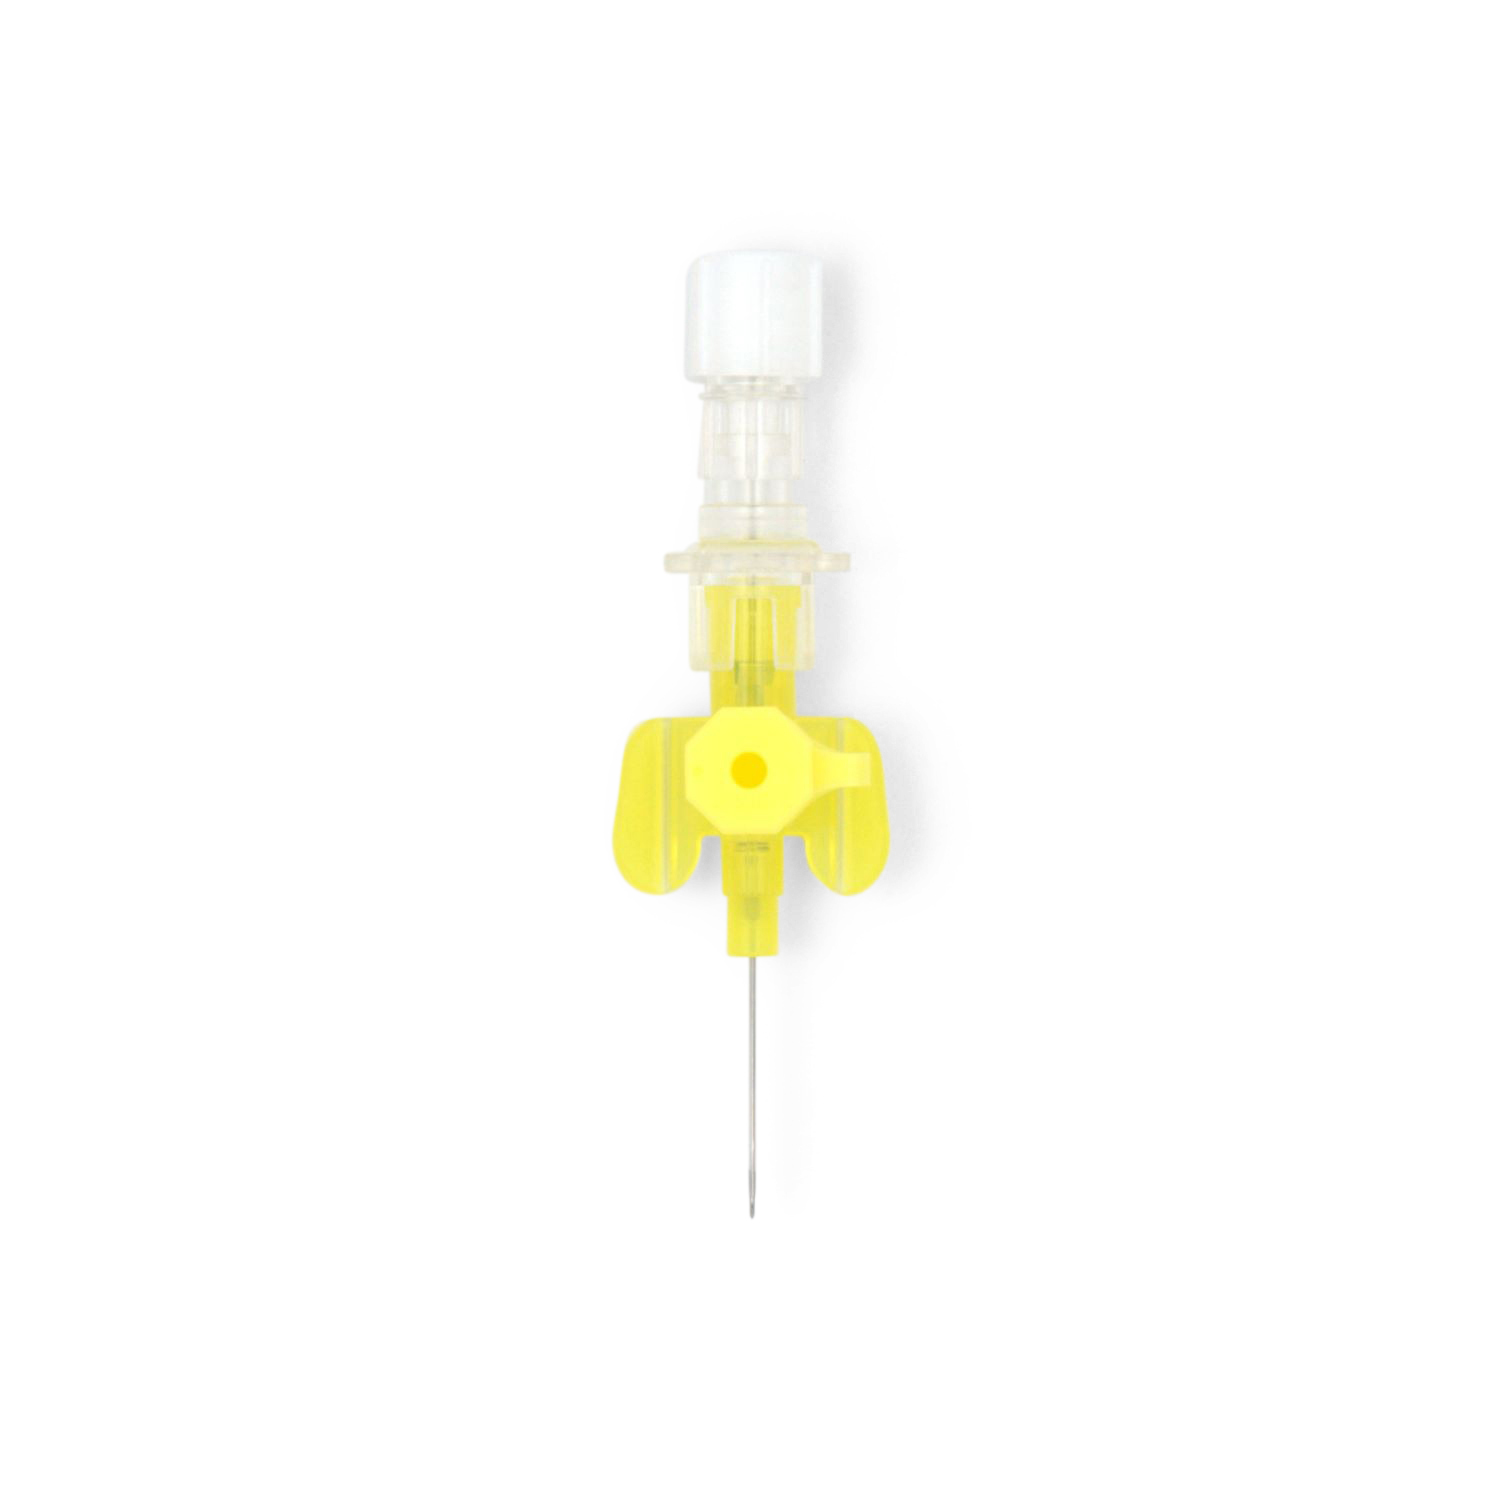 Vasofix® Safety Sicherheitsvenenverweilkanüle (0,70 x 19 mm G 24 gelb, PUR)